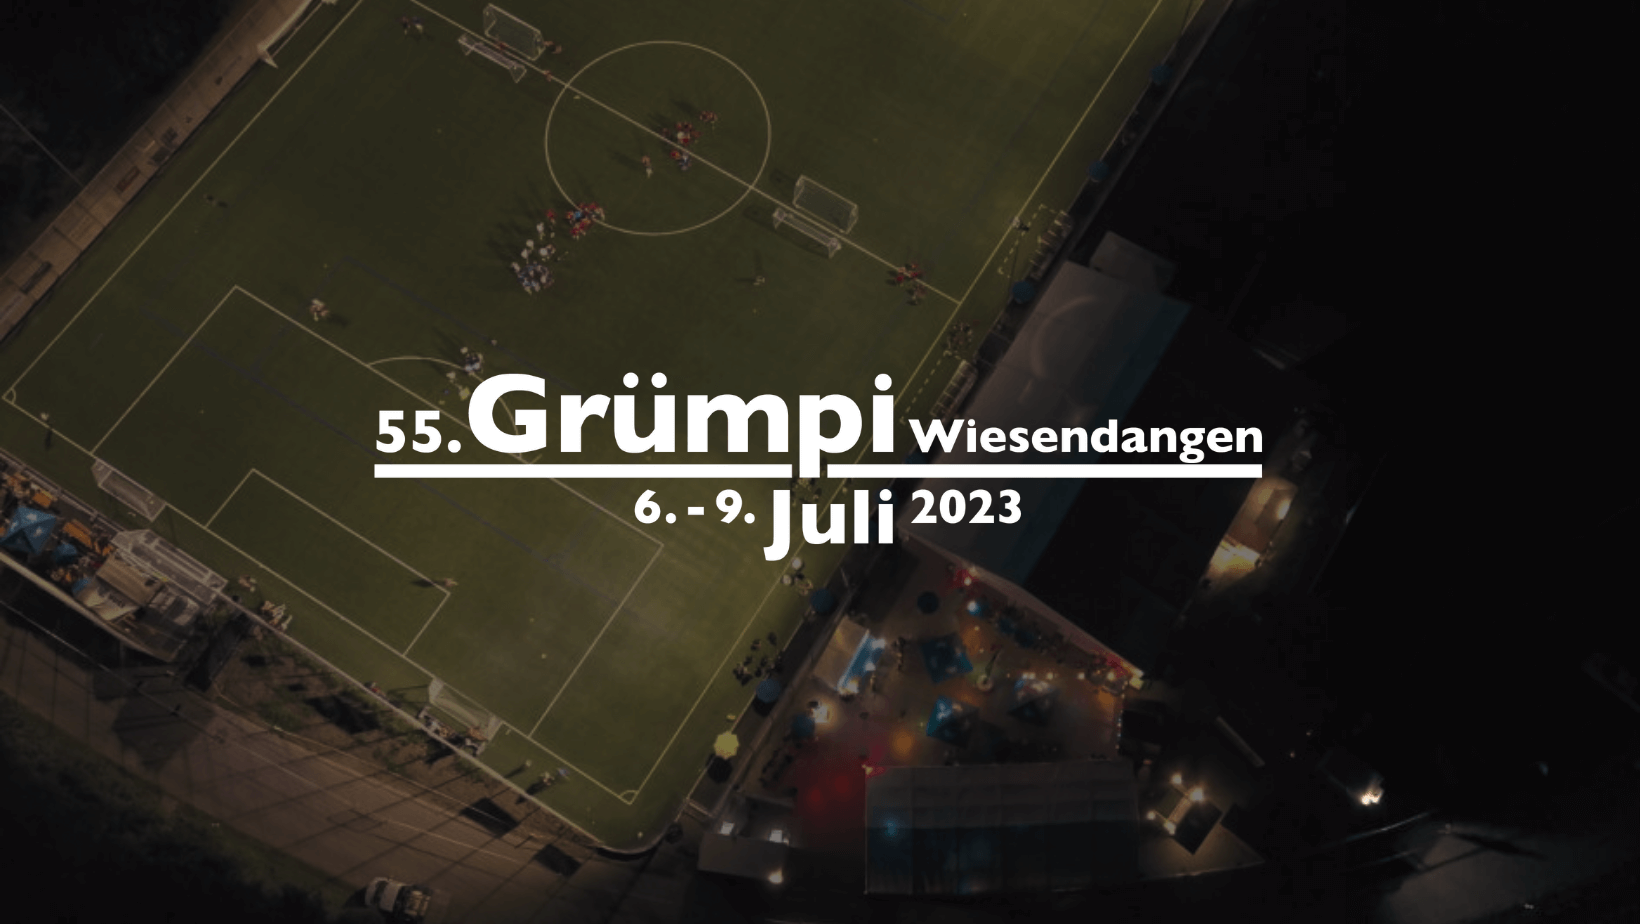 (c) Gruempi-wiesendangen.ch